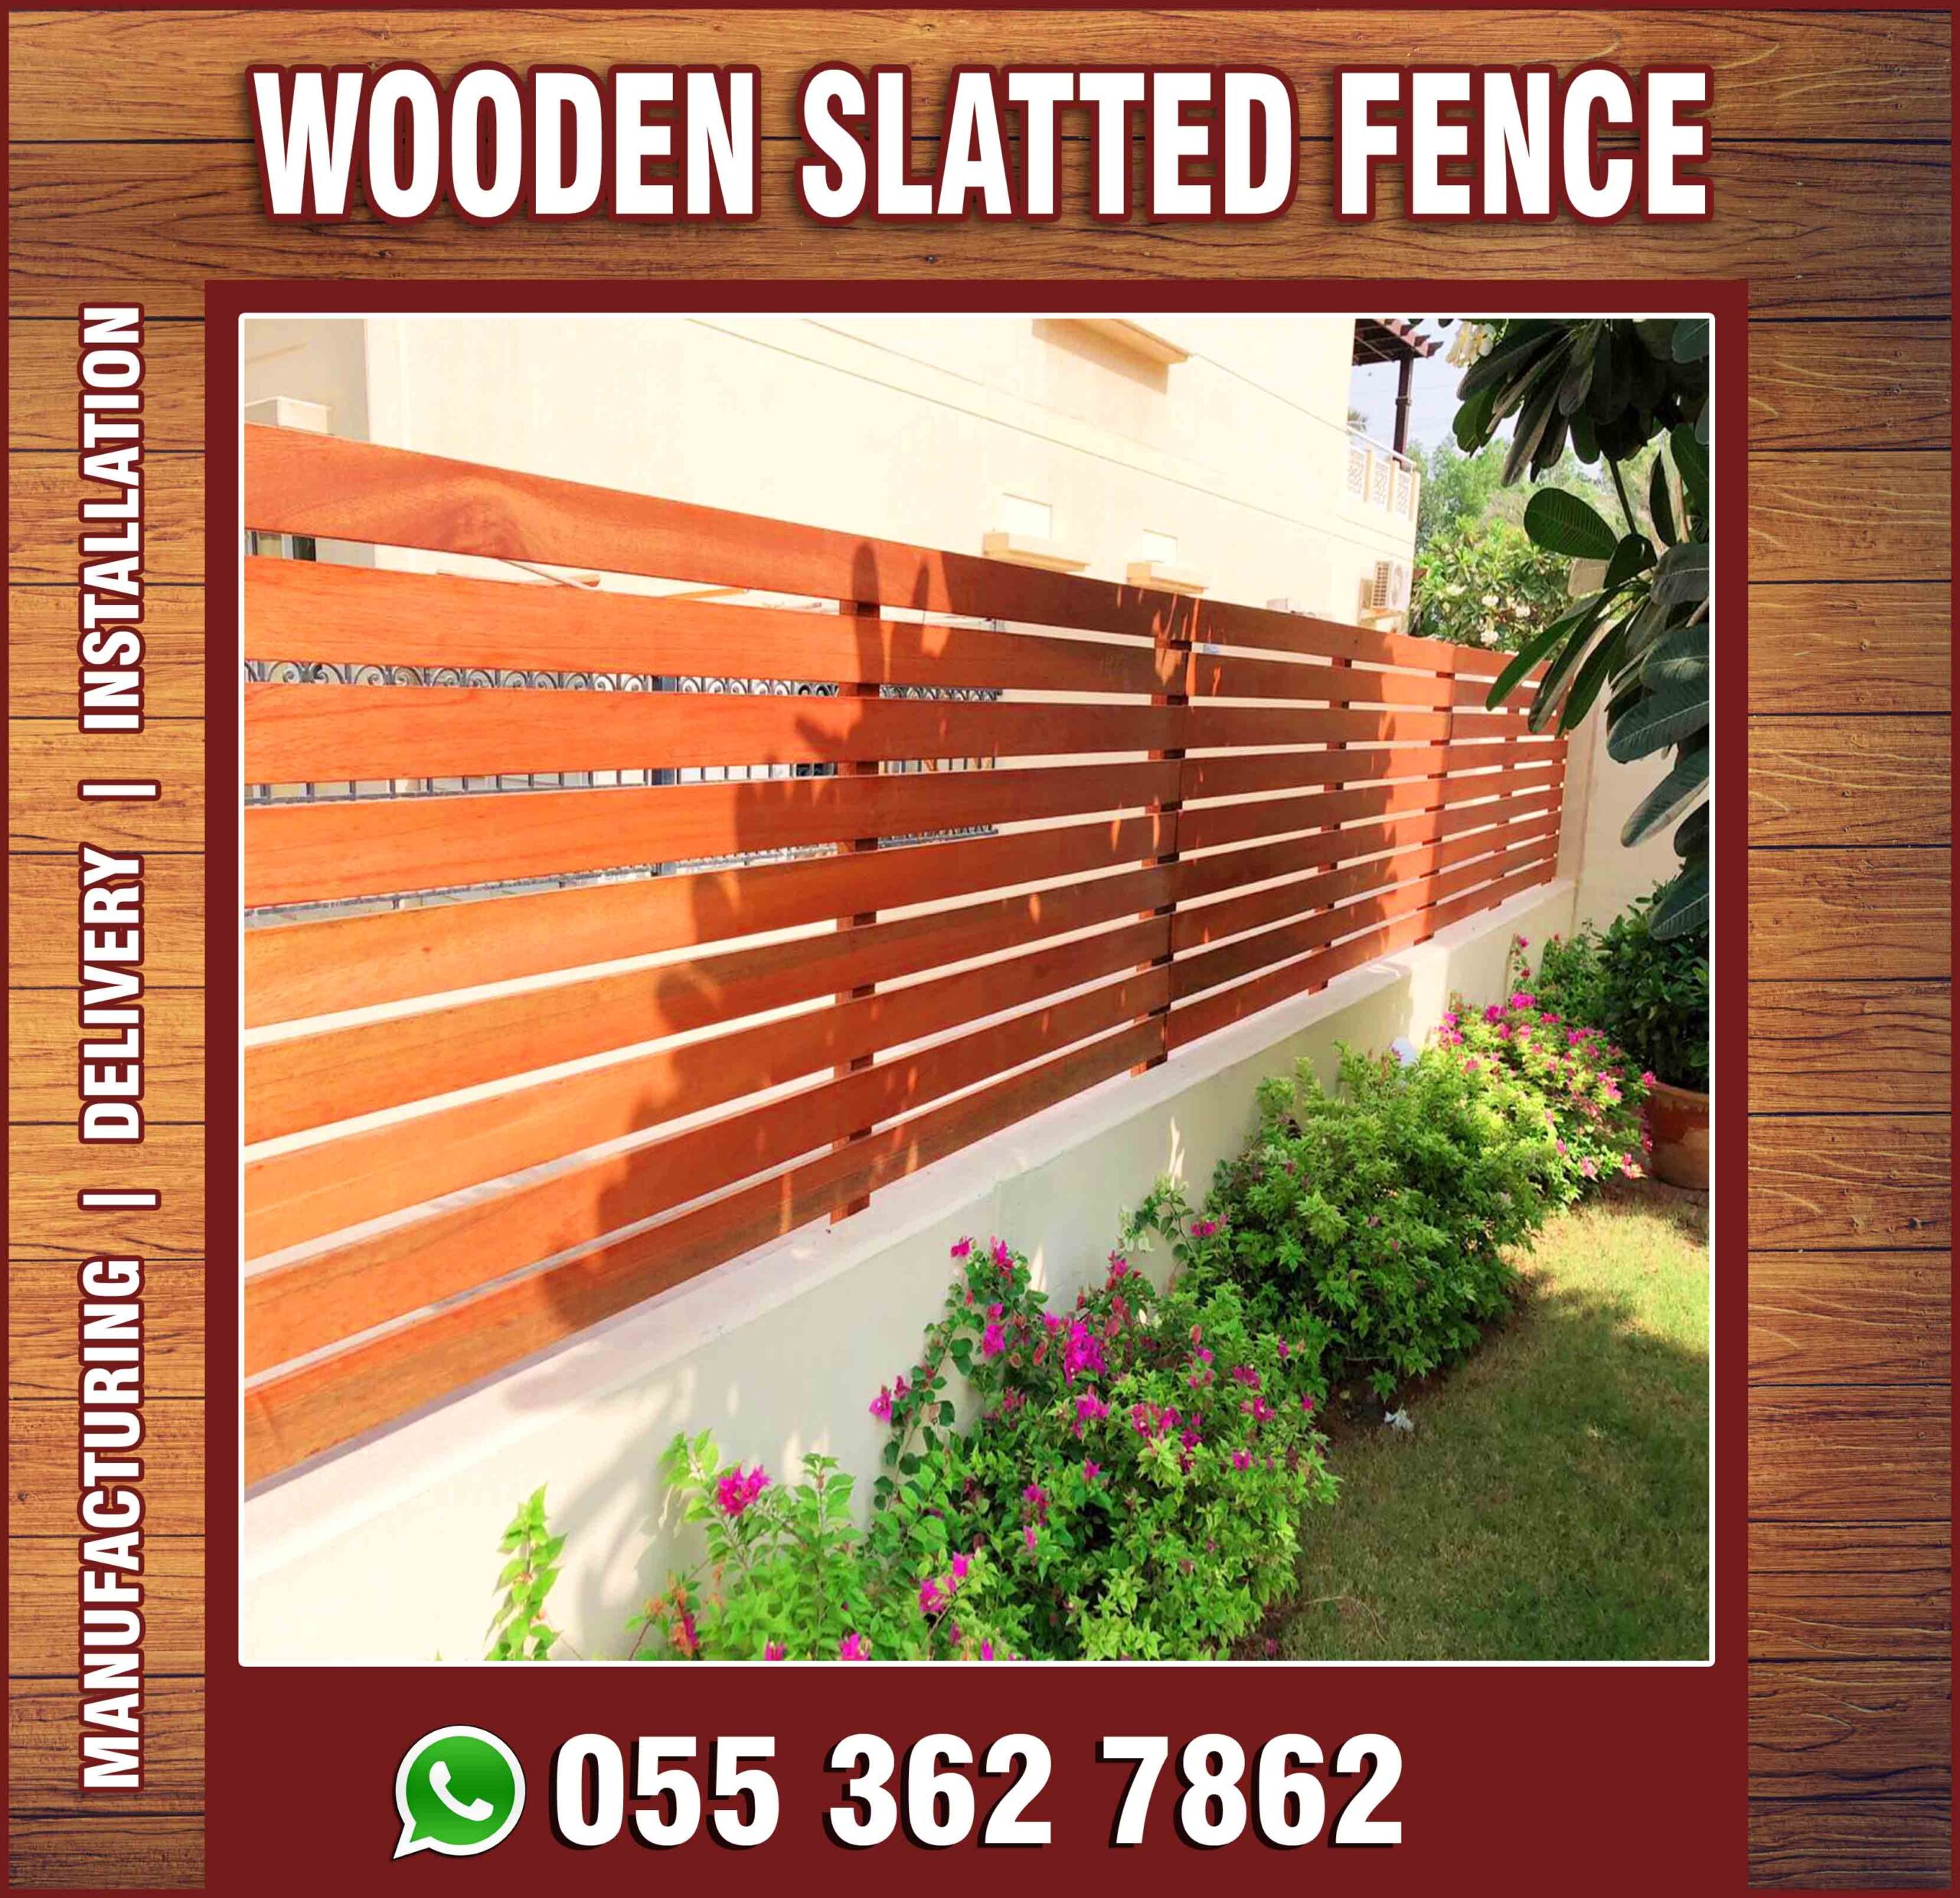 Wooden Slatted Fences in UAE.jpg